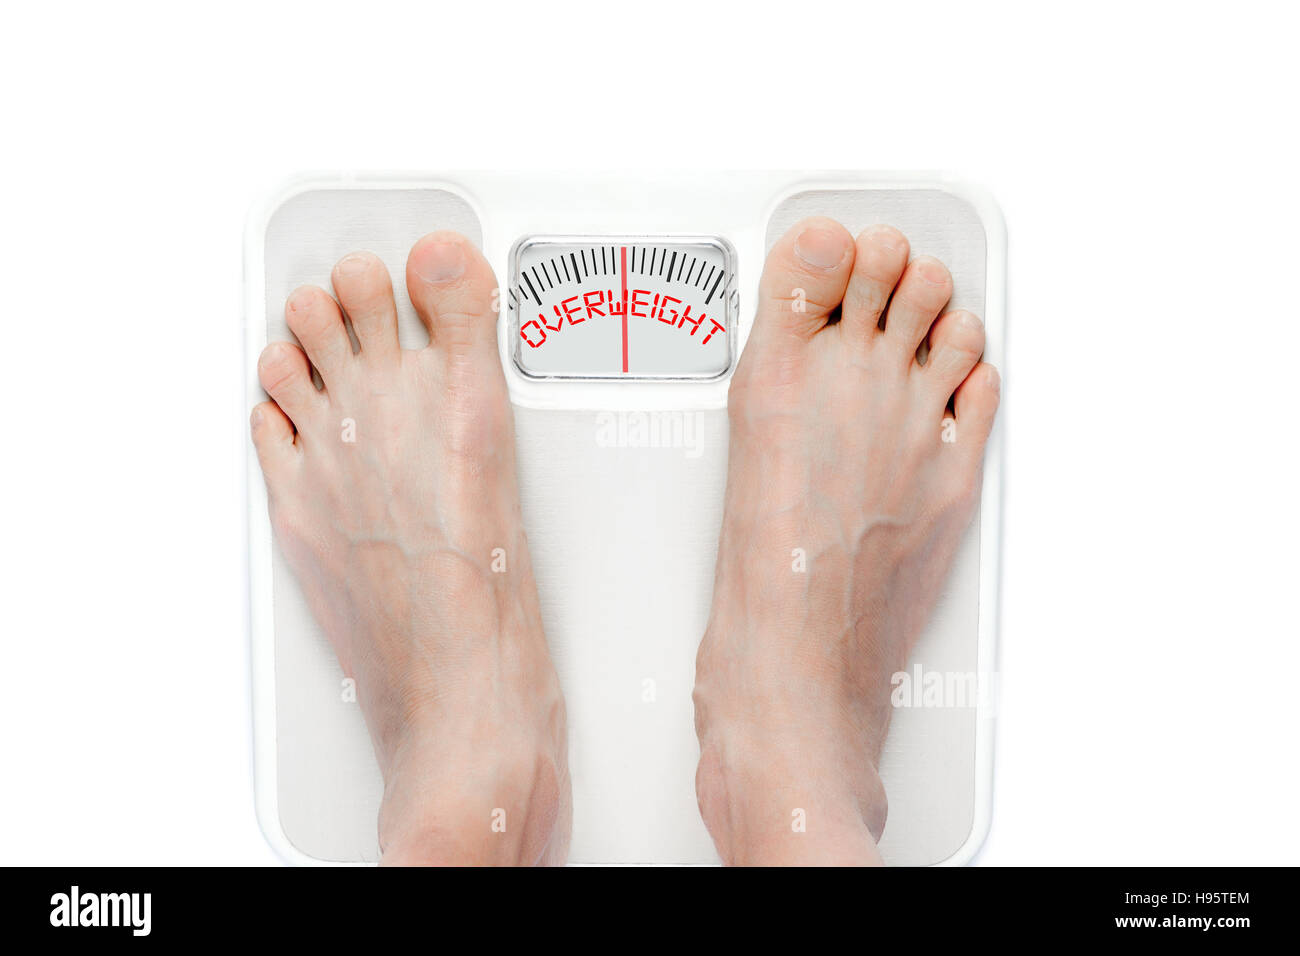 Füße auf mechanische Bad skalieren mit dem Wort Übergewicht auf dem Bildschirm. Fettleibige Gesundheitsprobleme erfordern richtigen Diät bedeutet. Stockfoto